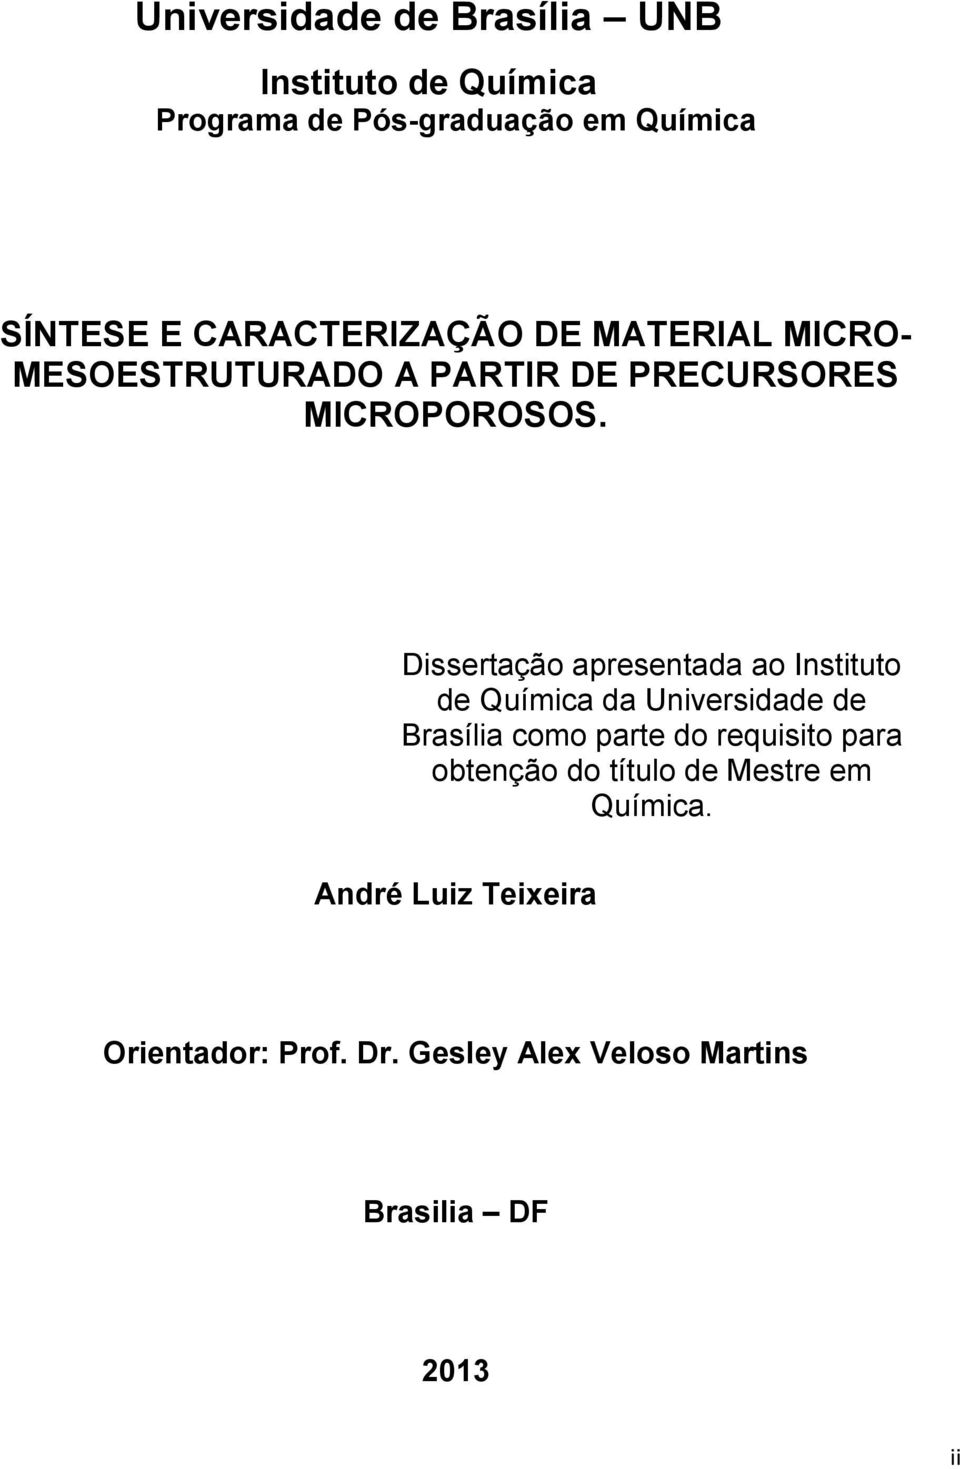 Dissertação apresentada ao Instituto de Química da Universidade de Brasília como parte do requisito para